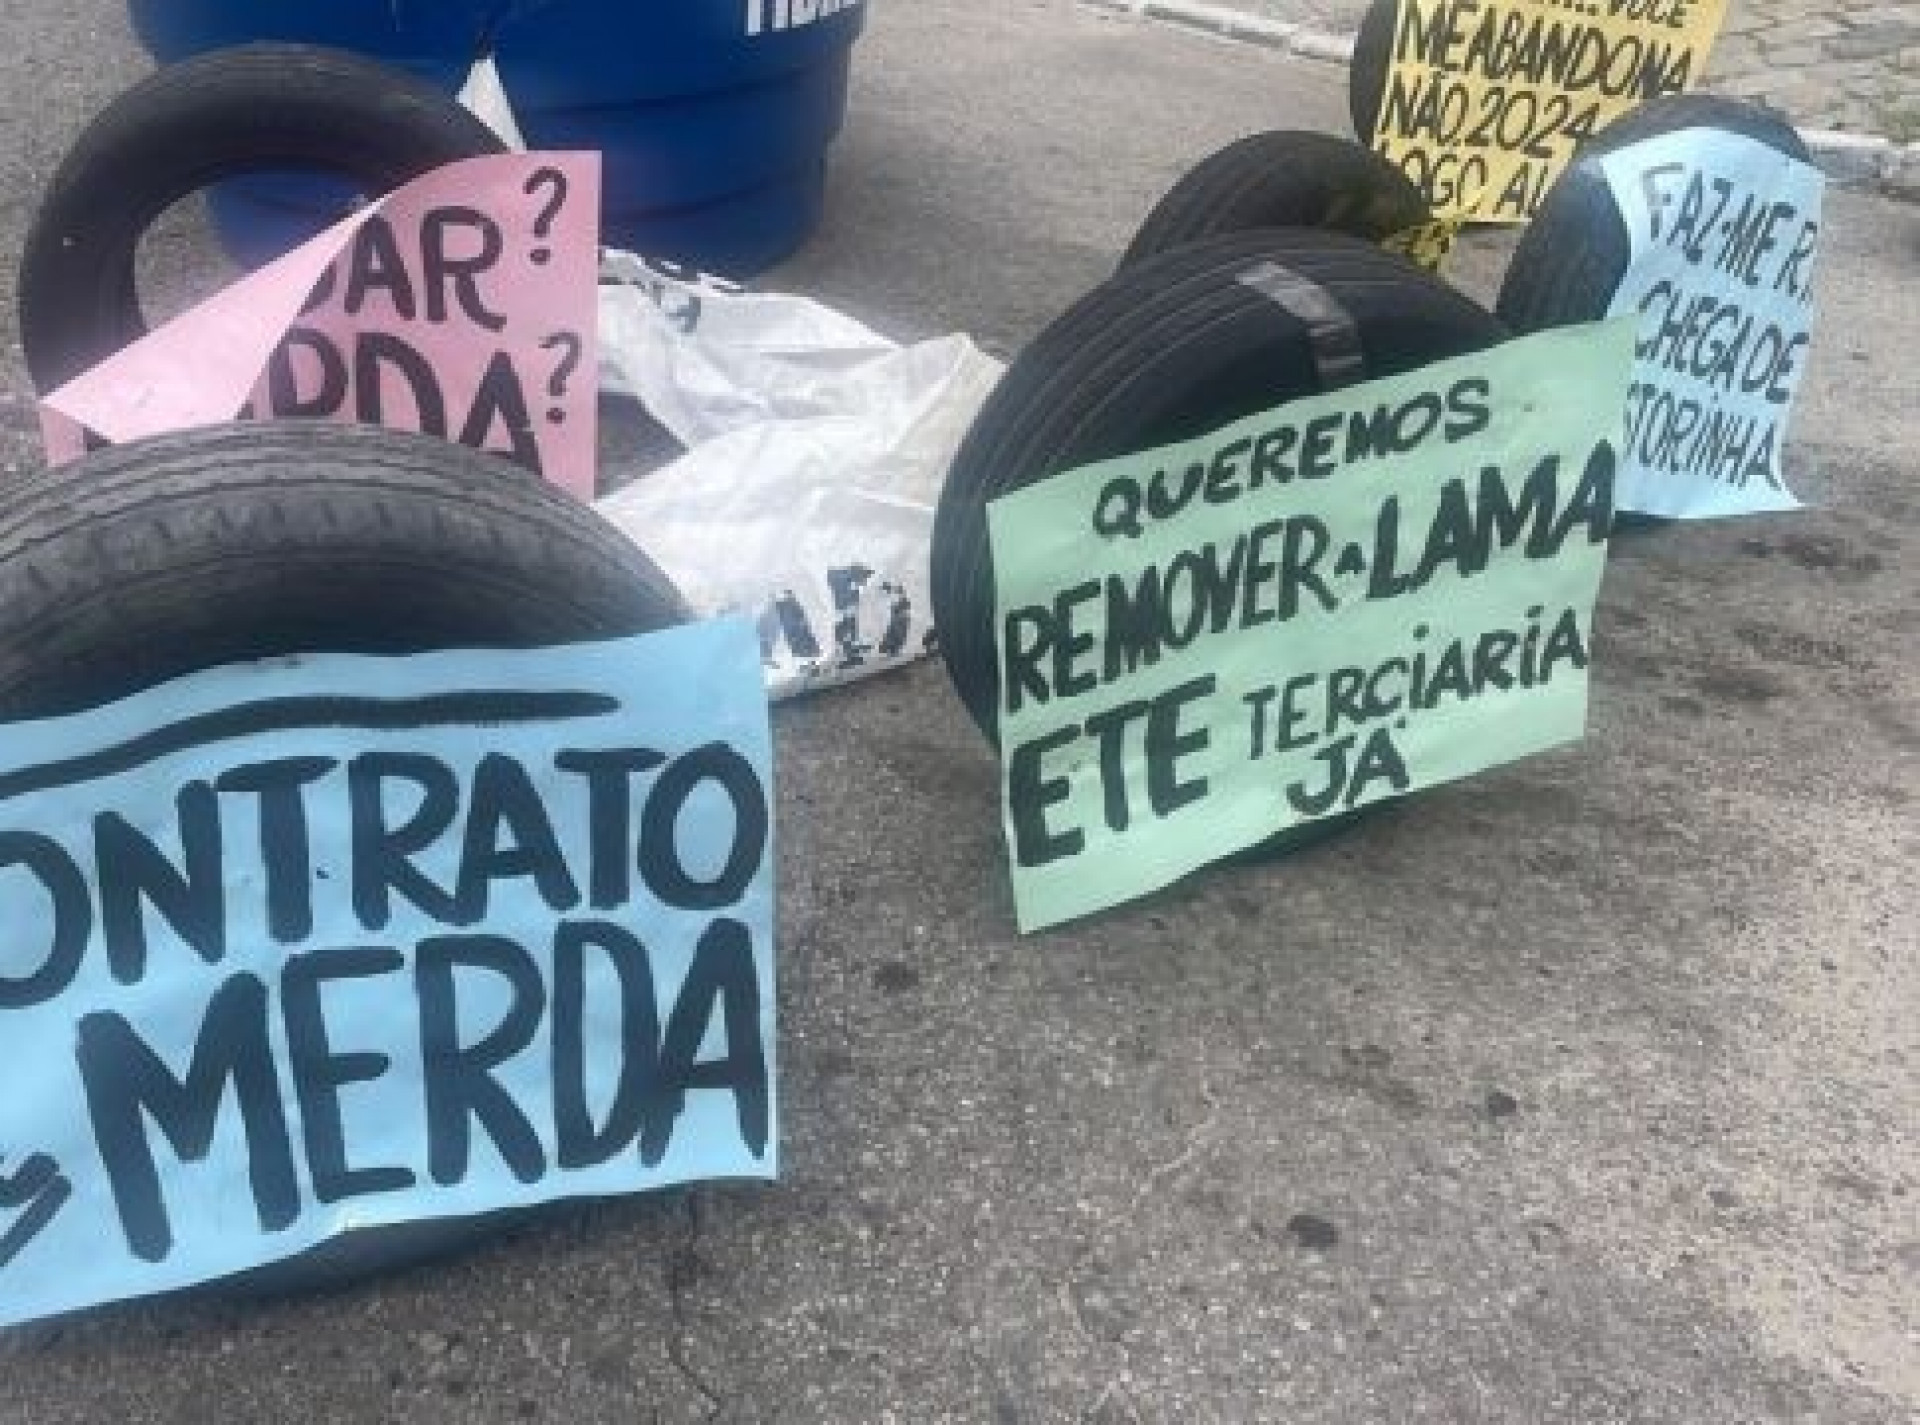 Protesto contra a sujeira  - Divulgação 